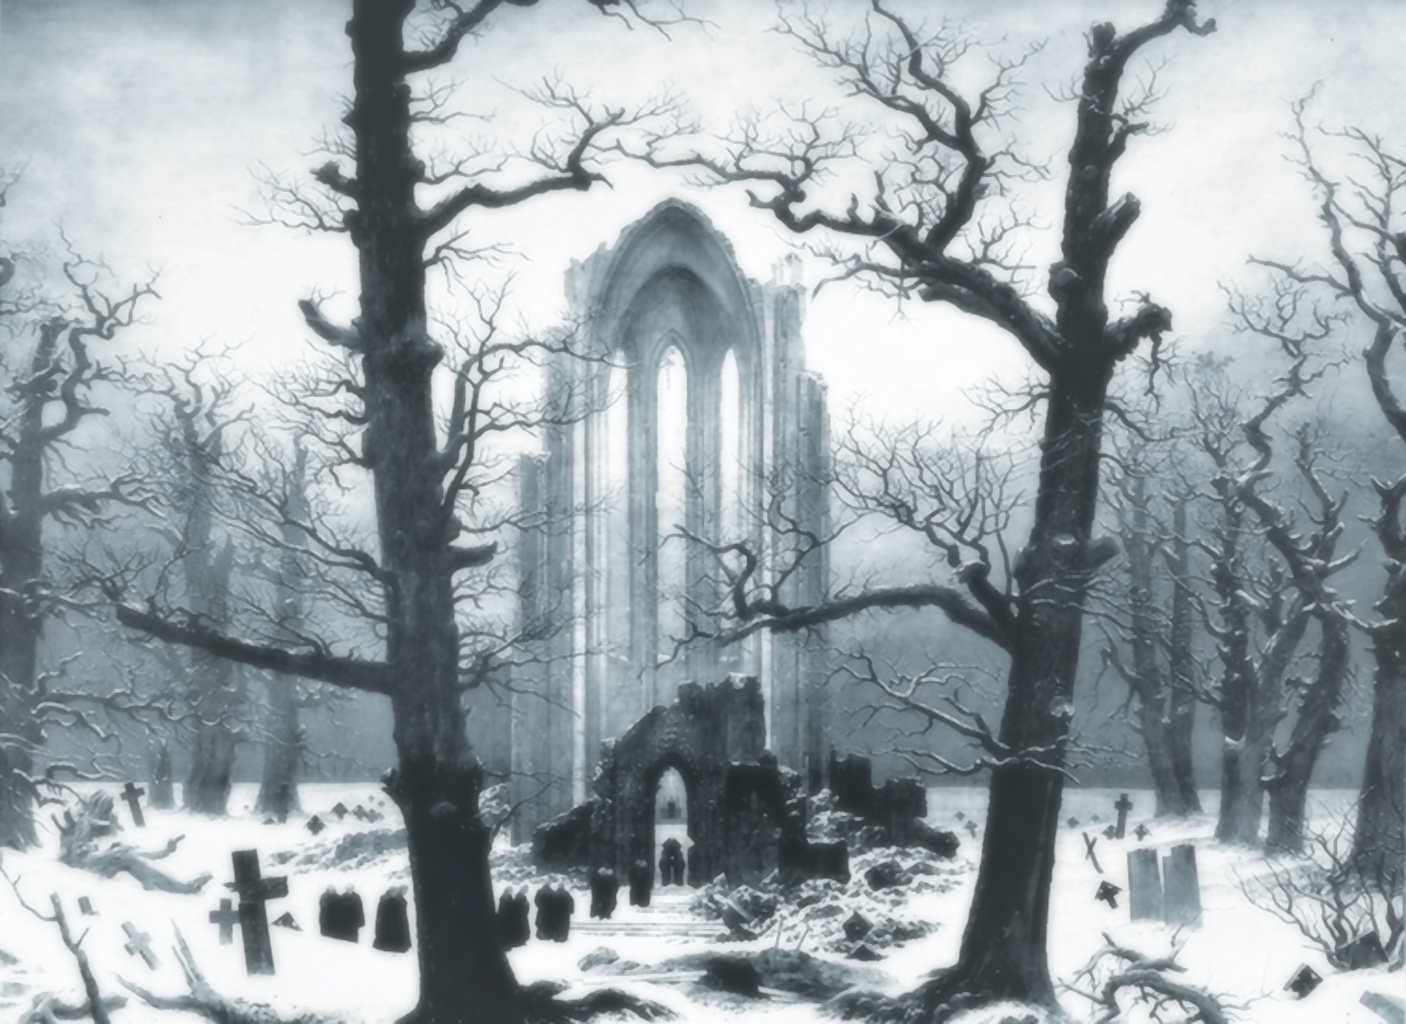 Winter graveyard ruin in snow, Caspar David Friedrich artwork, Monastery Graveyard under Snow (1819)